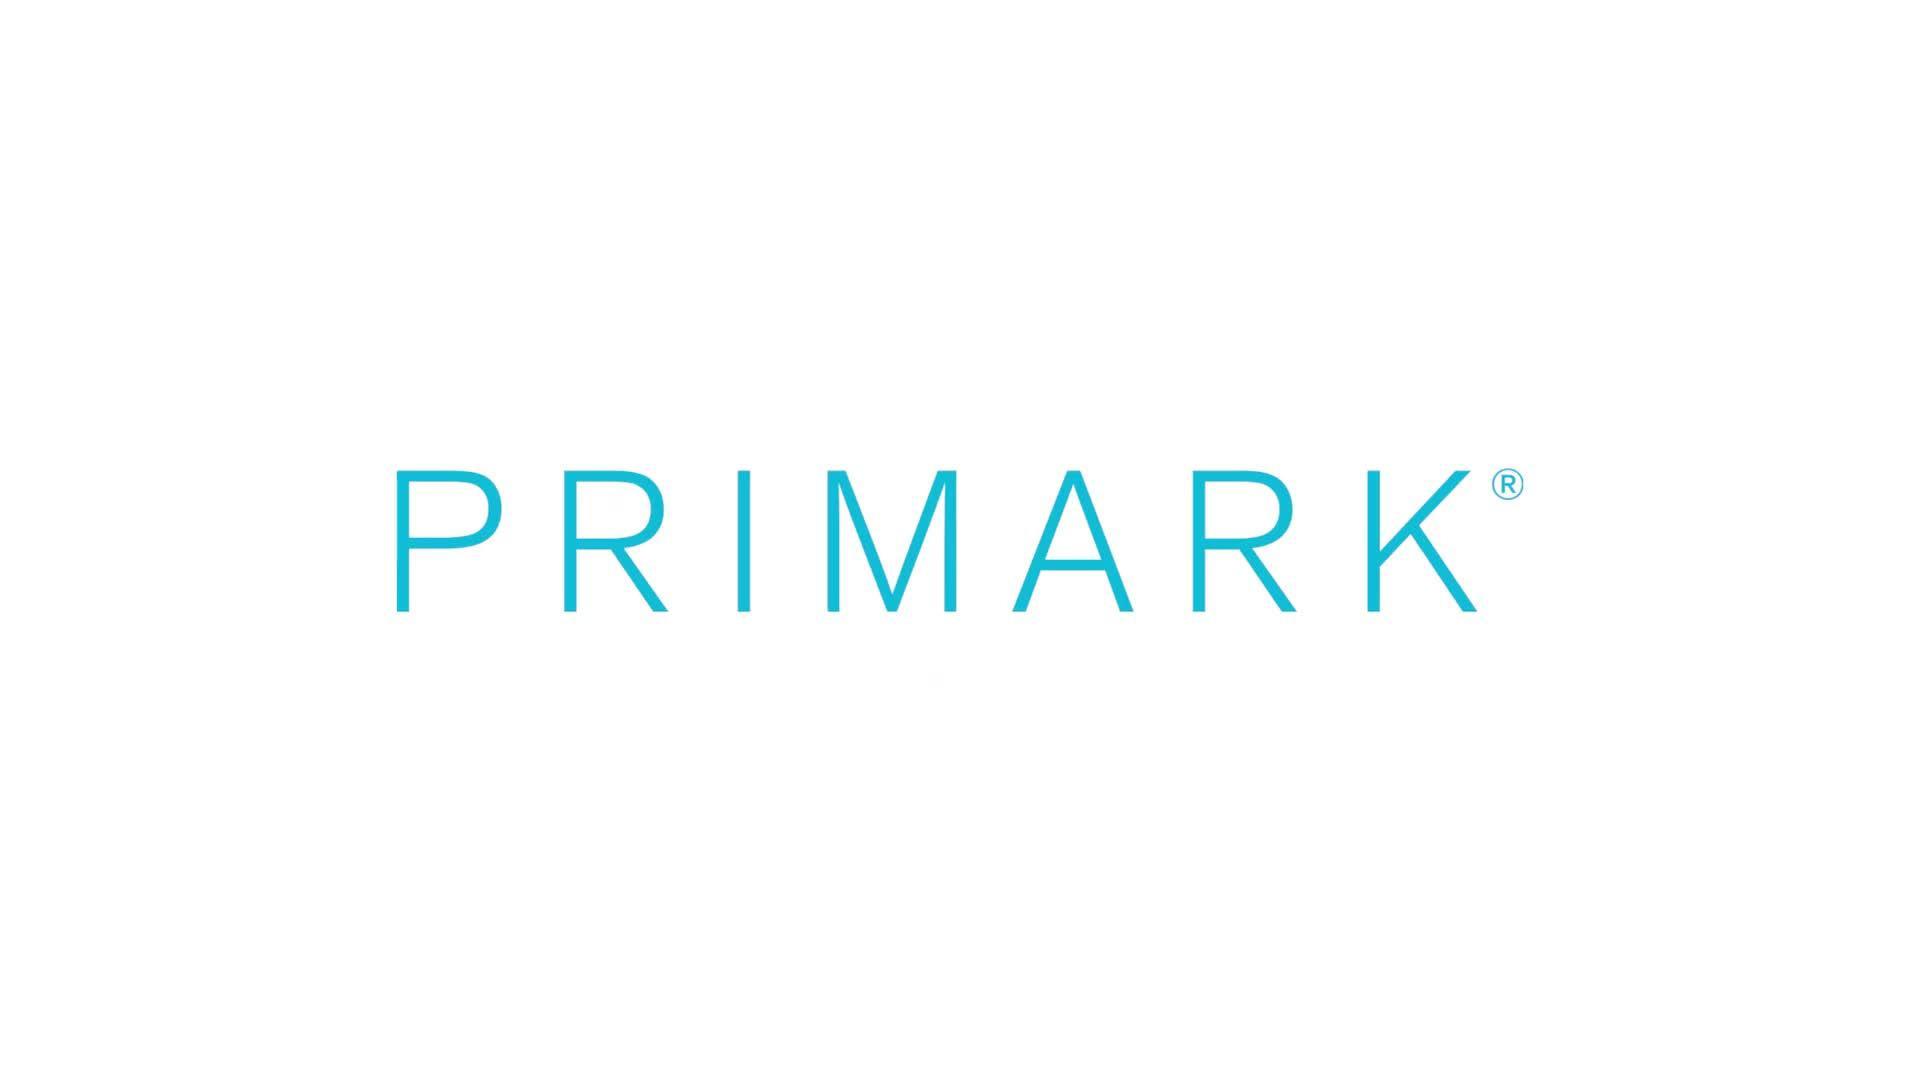 Varejista Primark completa 50 anos em fase de expansão com 372